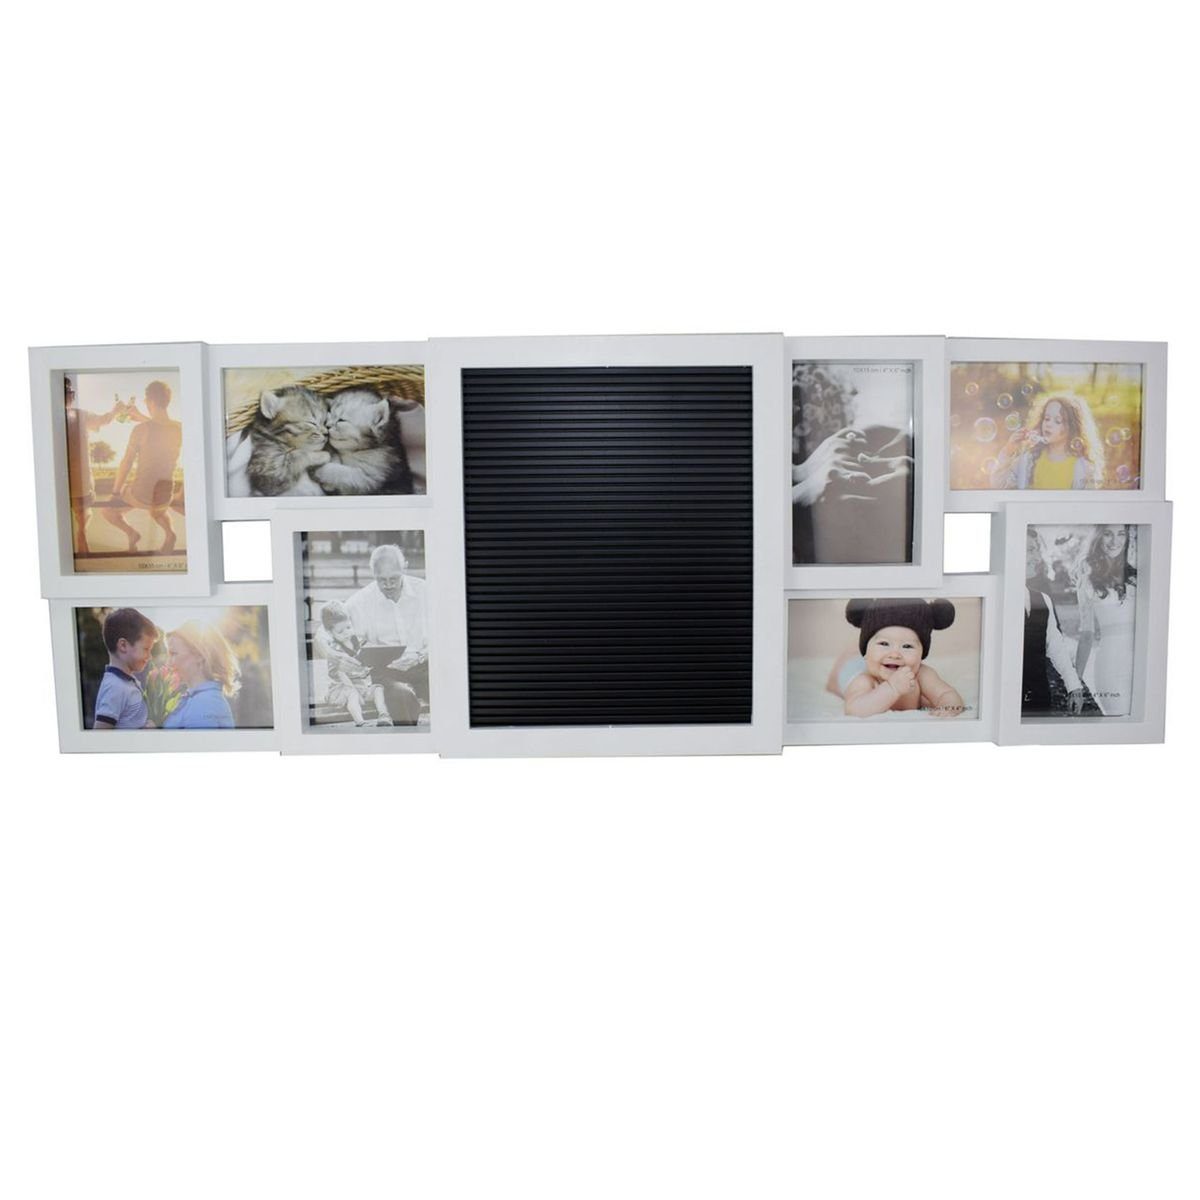 OOTB Fotohalter Fotorahmen für 8 Fotos in weiß mit Stecktafel und 144 Buchstaben, inkl. Stecktafel